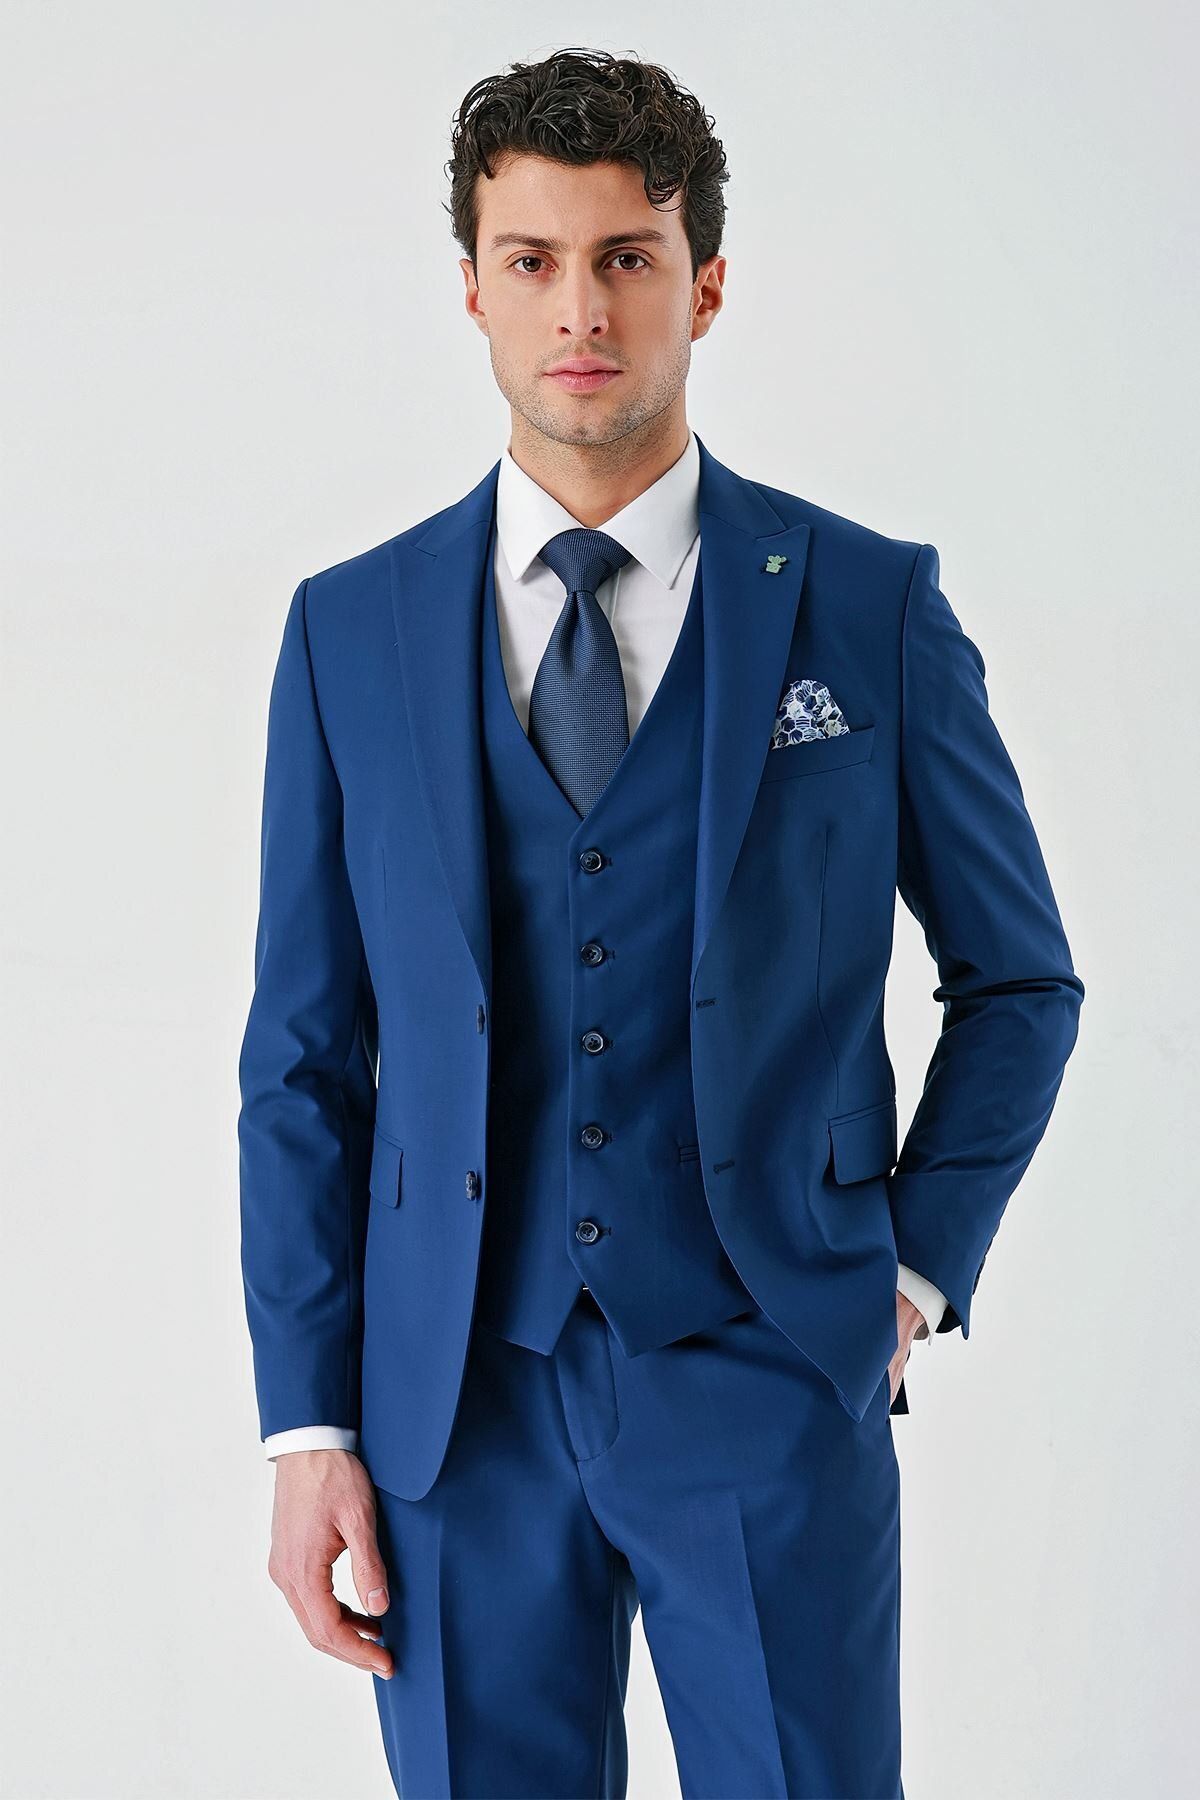 İmza Lacivert Gabardin Kırlangıç Yaka Yelekli 6 Drop Slim Fit Klasik Takım Elbise 1001240187